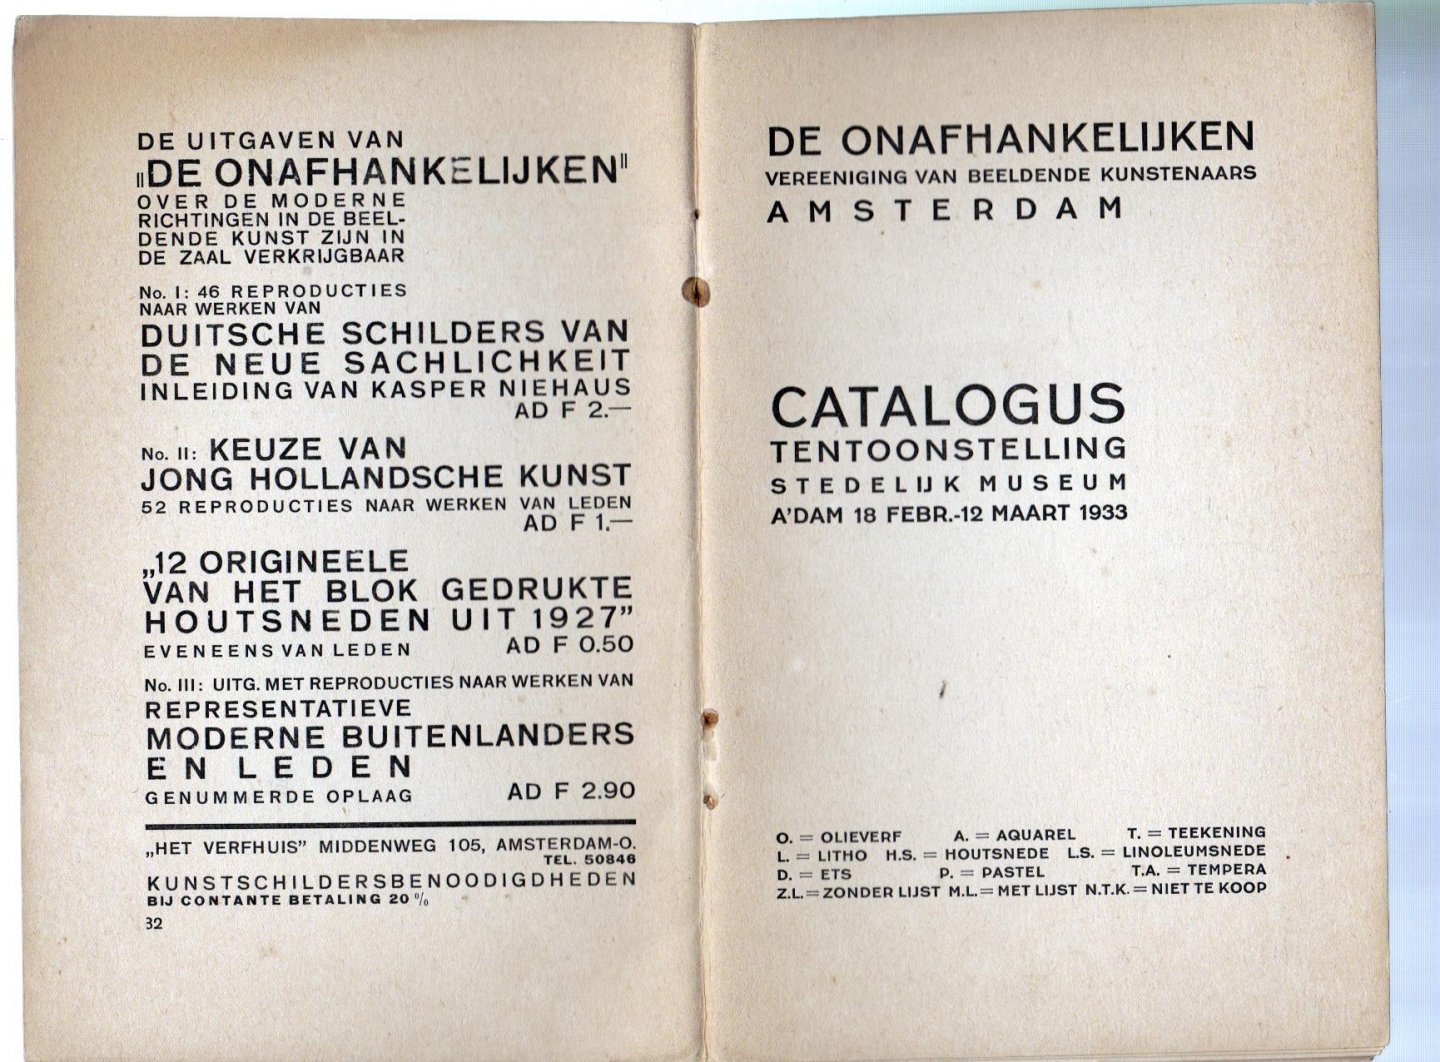 geen - Catalogus tentoonstelling Stedelijk Museum Amsterdam 18 febr-12 maart 1933